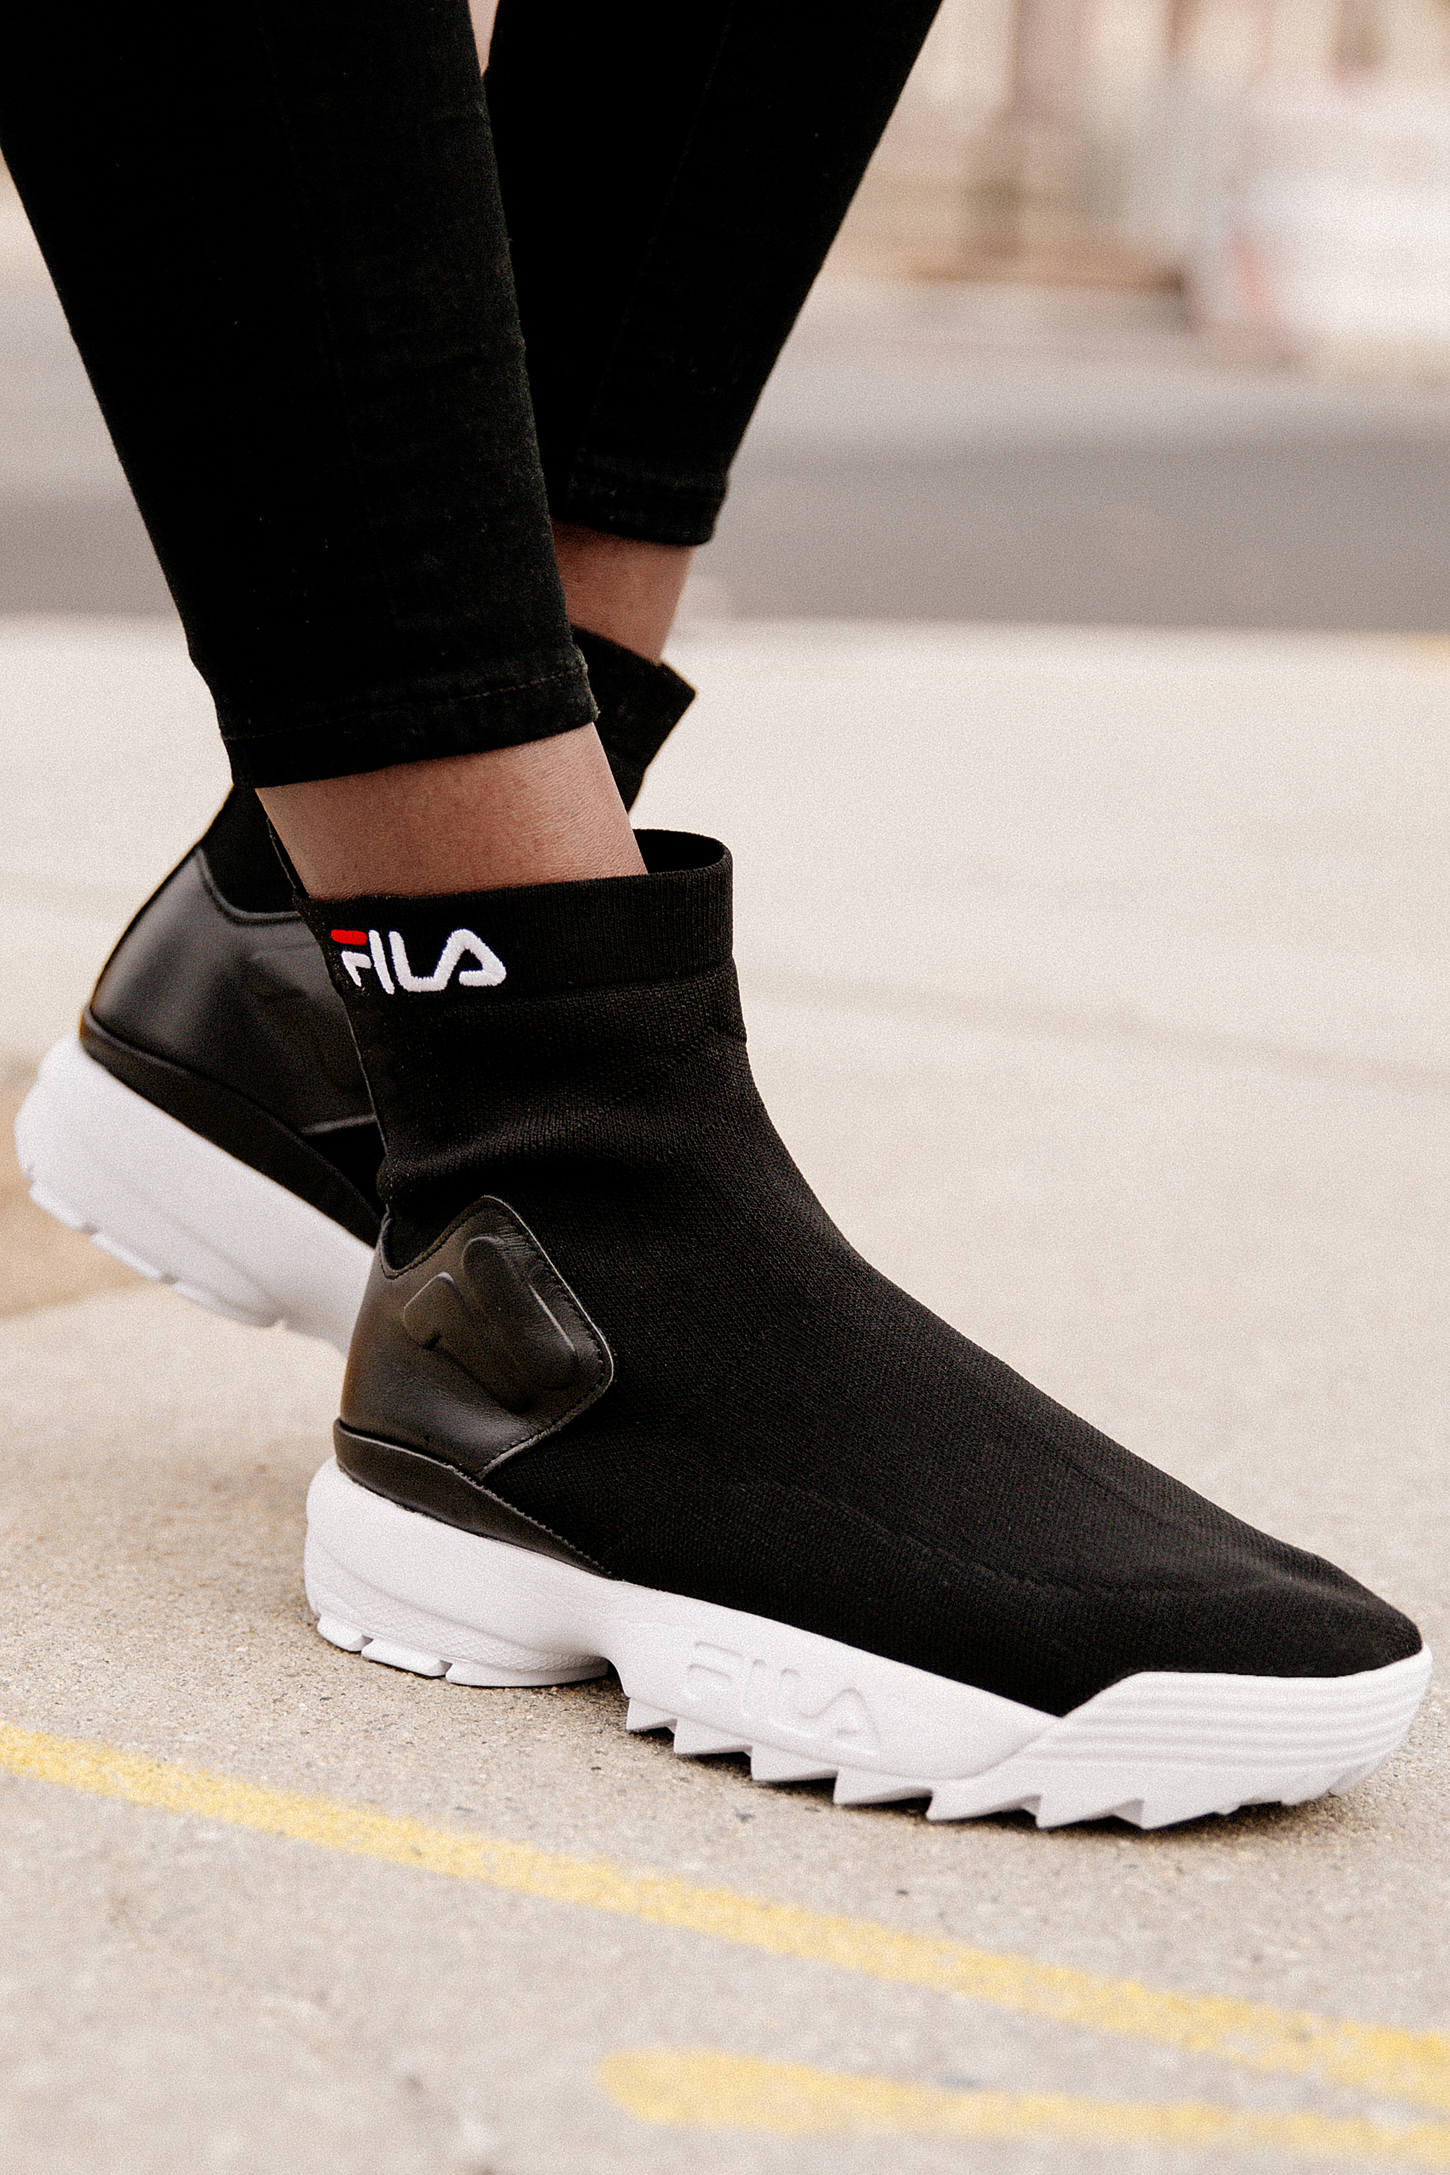 Buy FILA Disruptor Sock Boot Sneaker at 